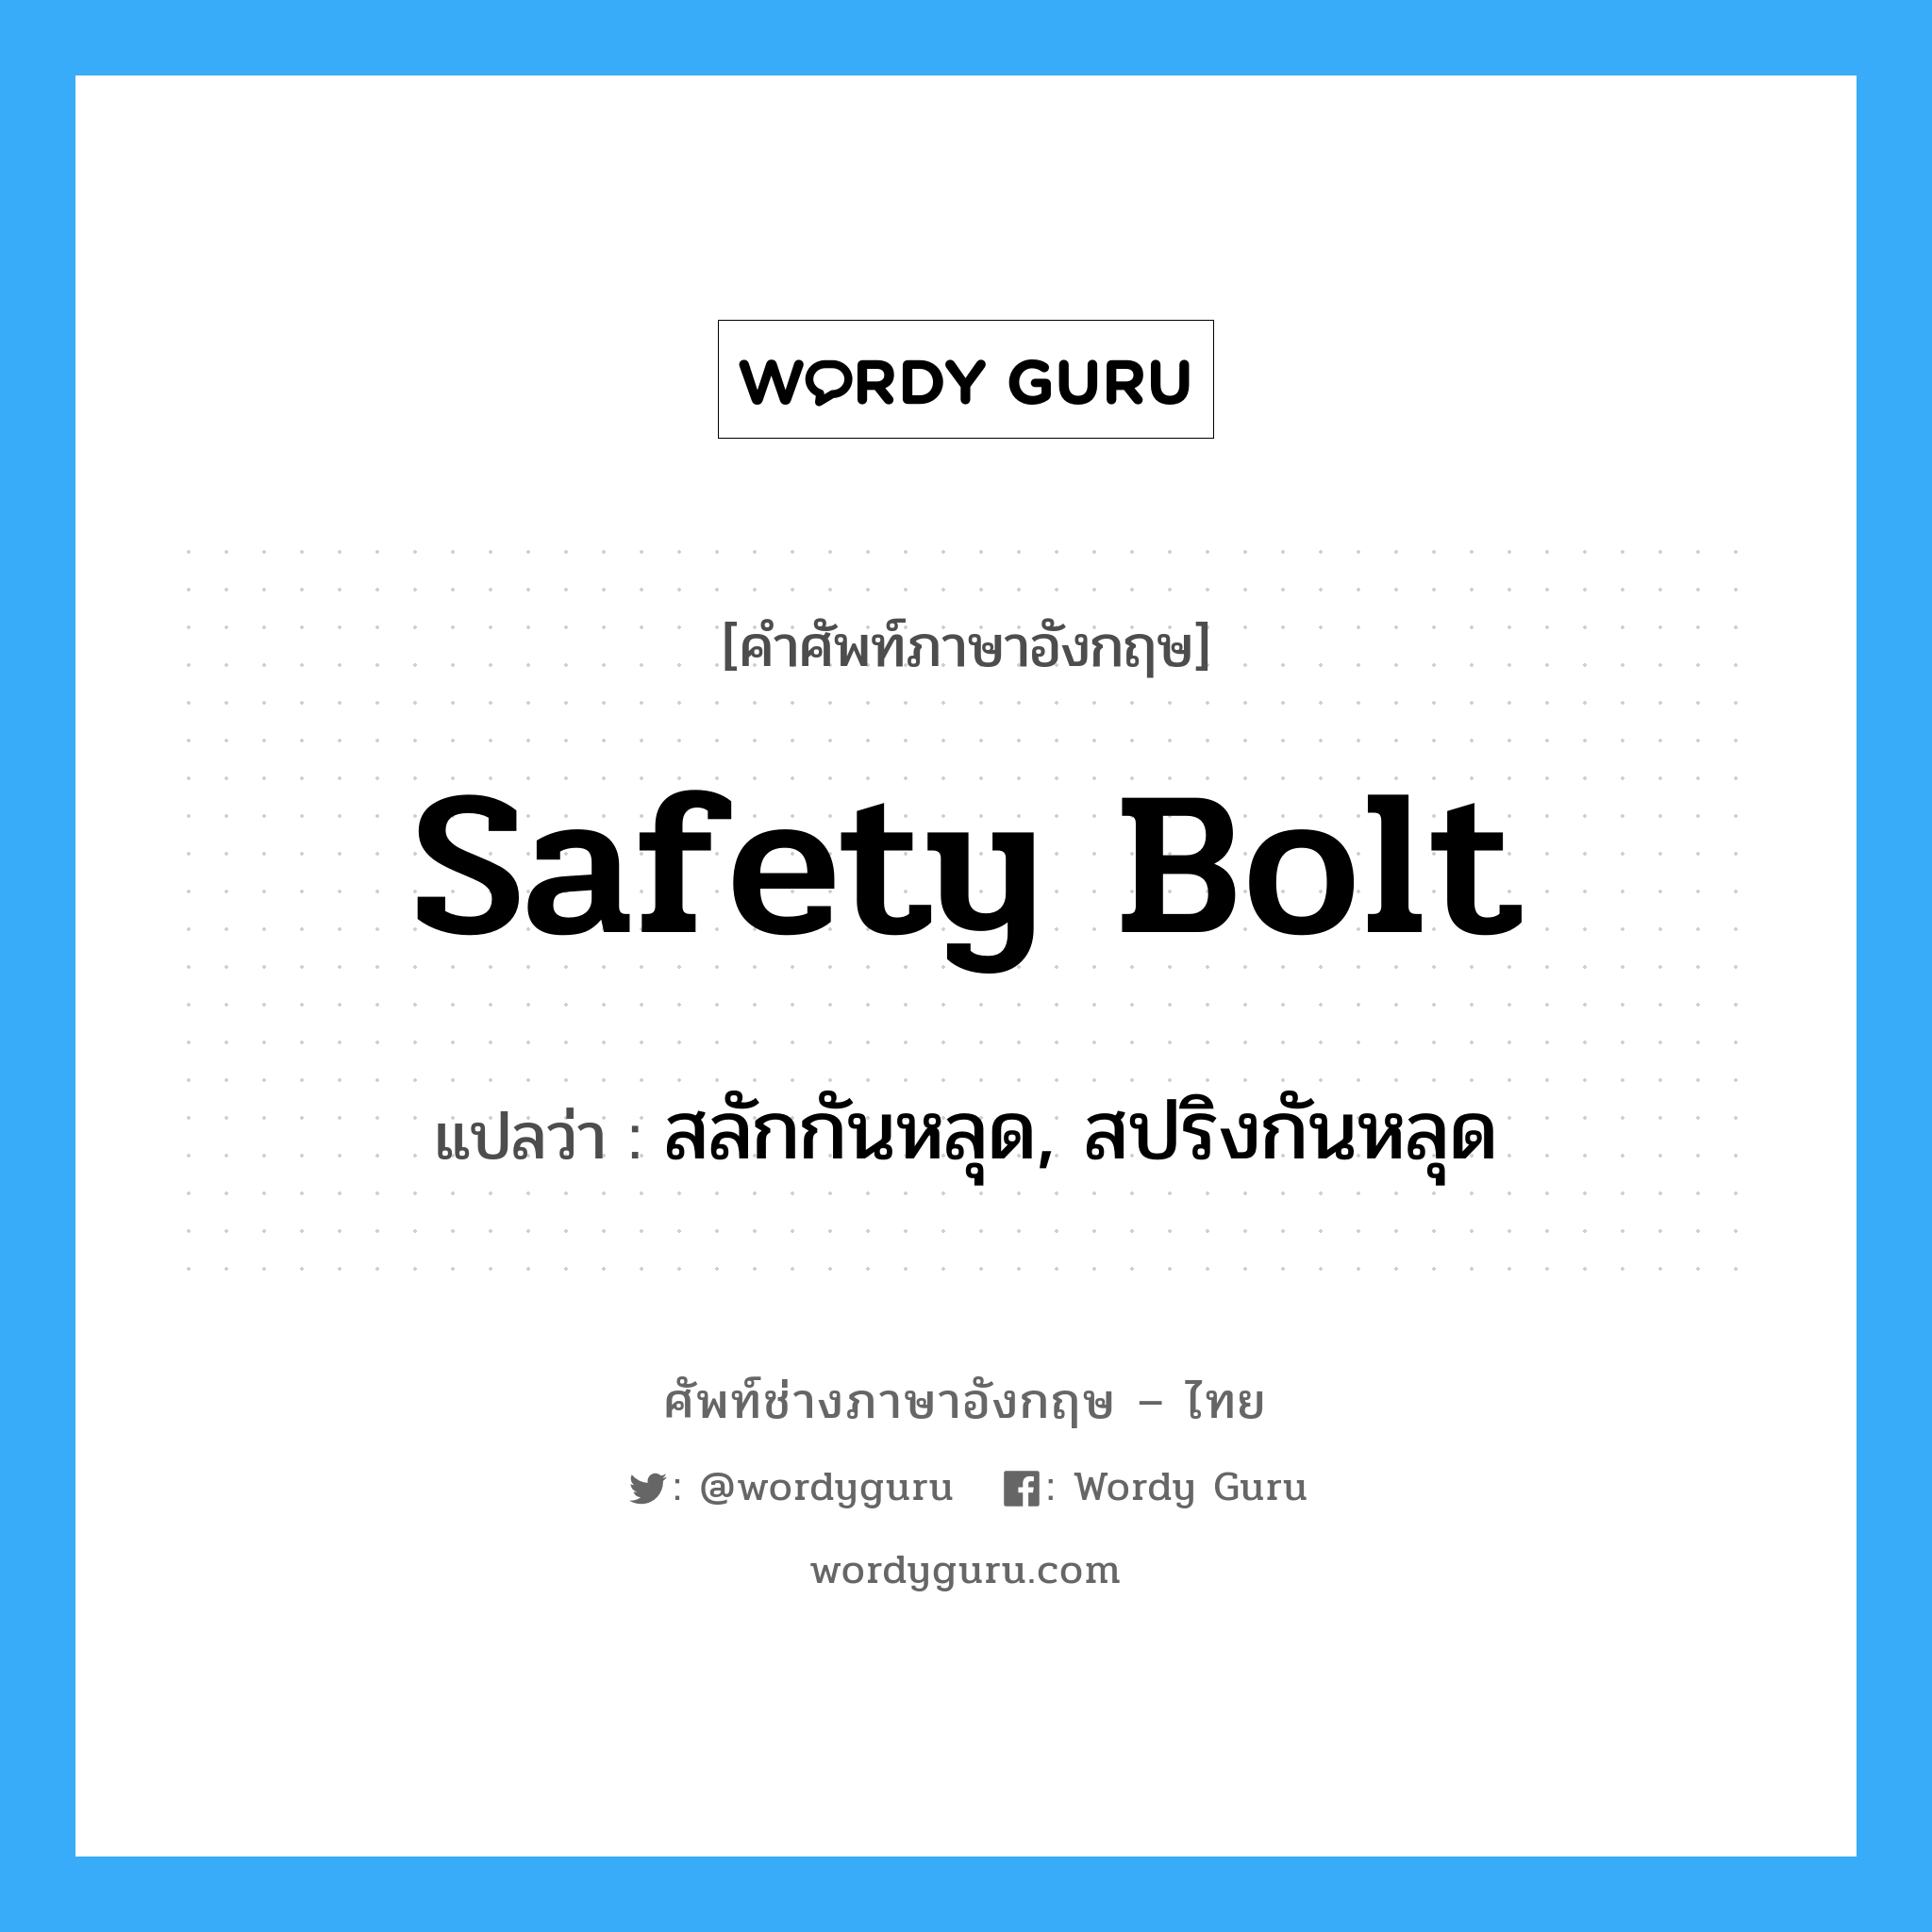 safety bolt แปลว่า?, คำศัพท์ช่างภาษาอังกฤษ - ไทย safety bolt คำศัพท์ภาษาอังกฤษ safety bolt แปลว่า สลักกันหลุด, สปริงกันหลุด